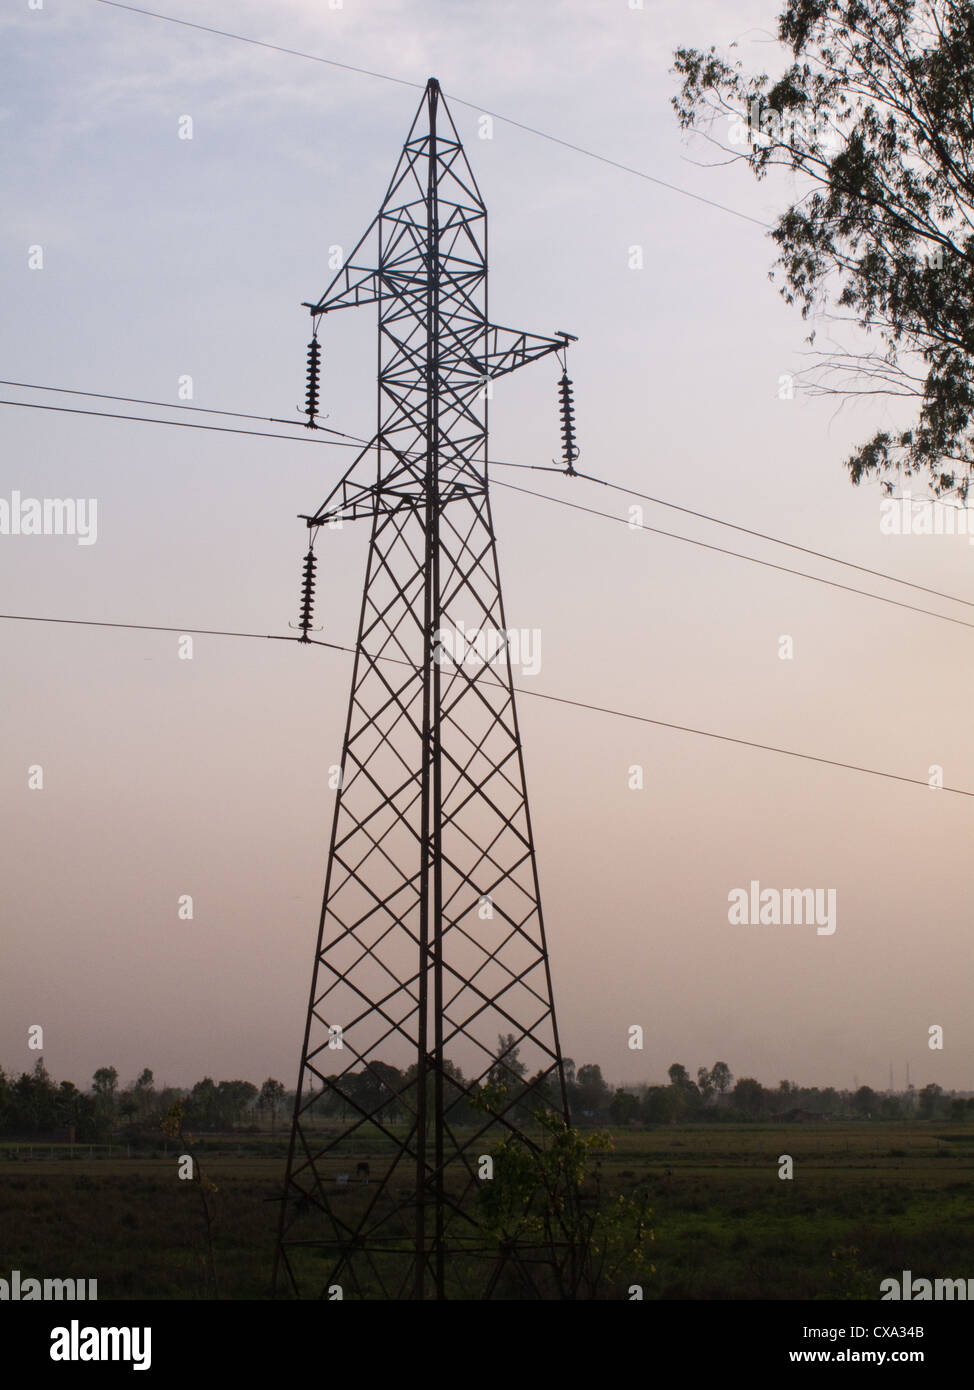 Ein Sendeturm, Durchführung von elektrischen Leitungen in der Landschaft im ländlichen Indien. Es ist rund um Sonnenuntergang, Hintergrund grün. Stockfoto